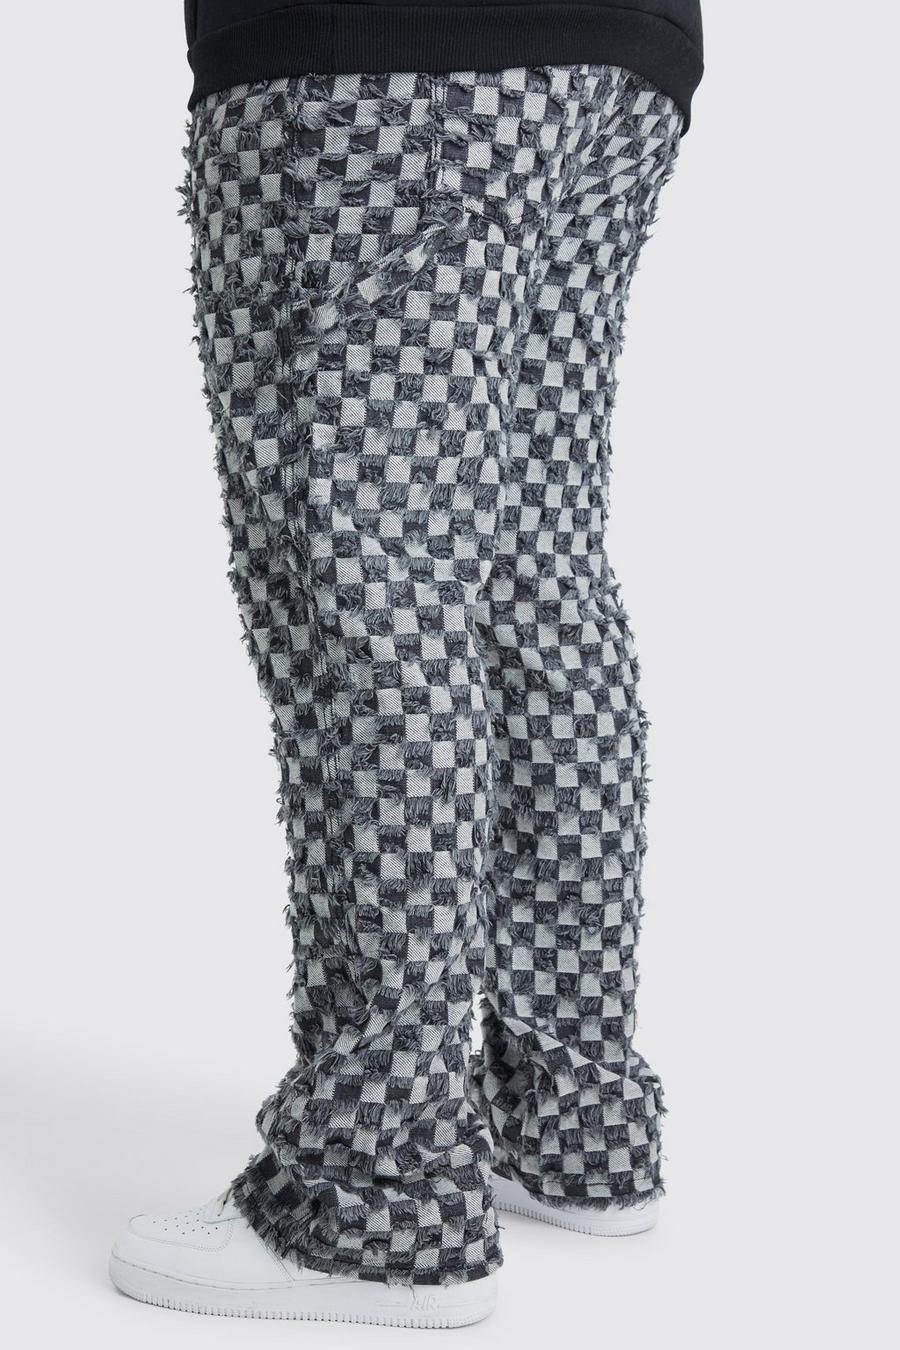 Pantalón Plus ajustado de campana con estampado de cuadros, refuerzos y cintura fija, Charcoal